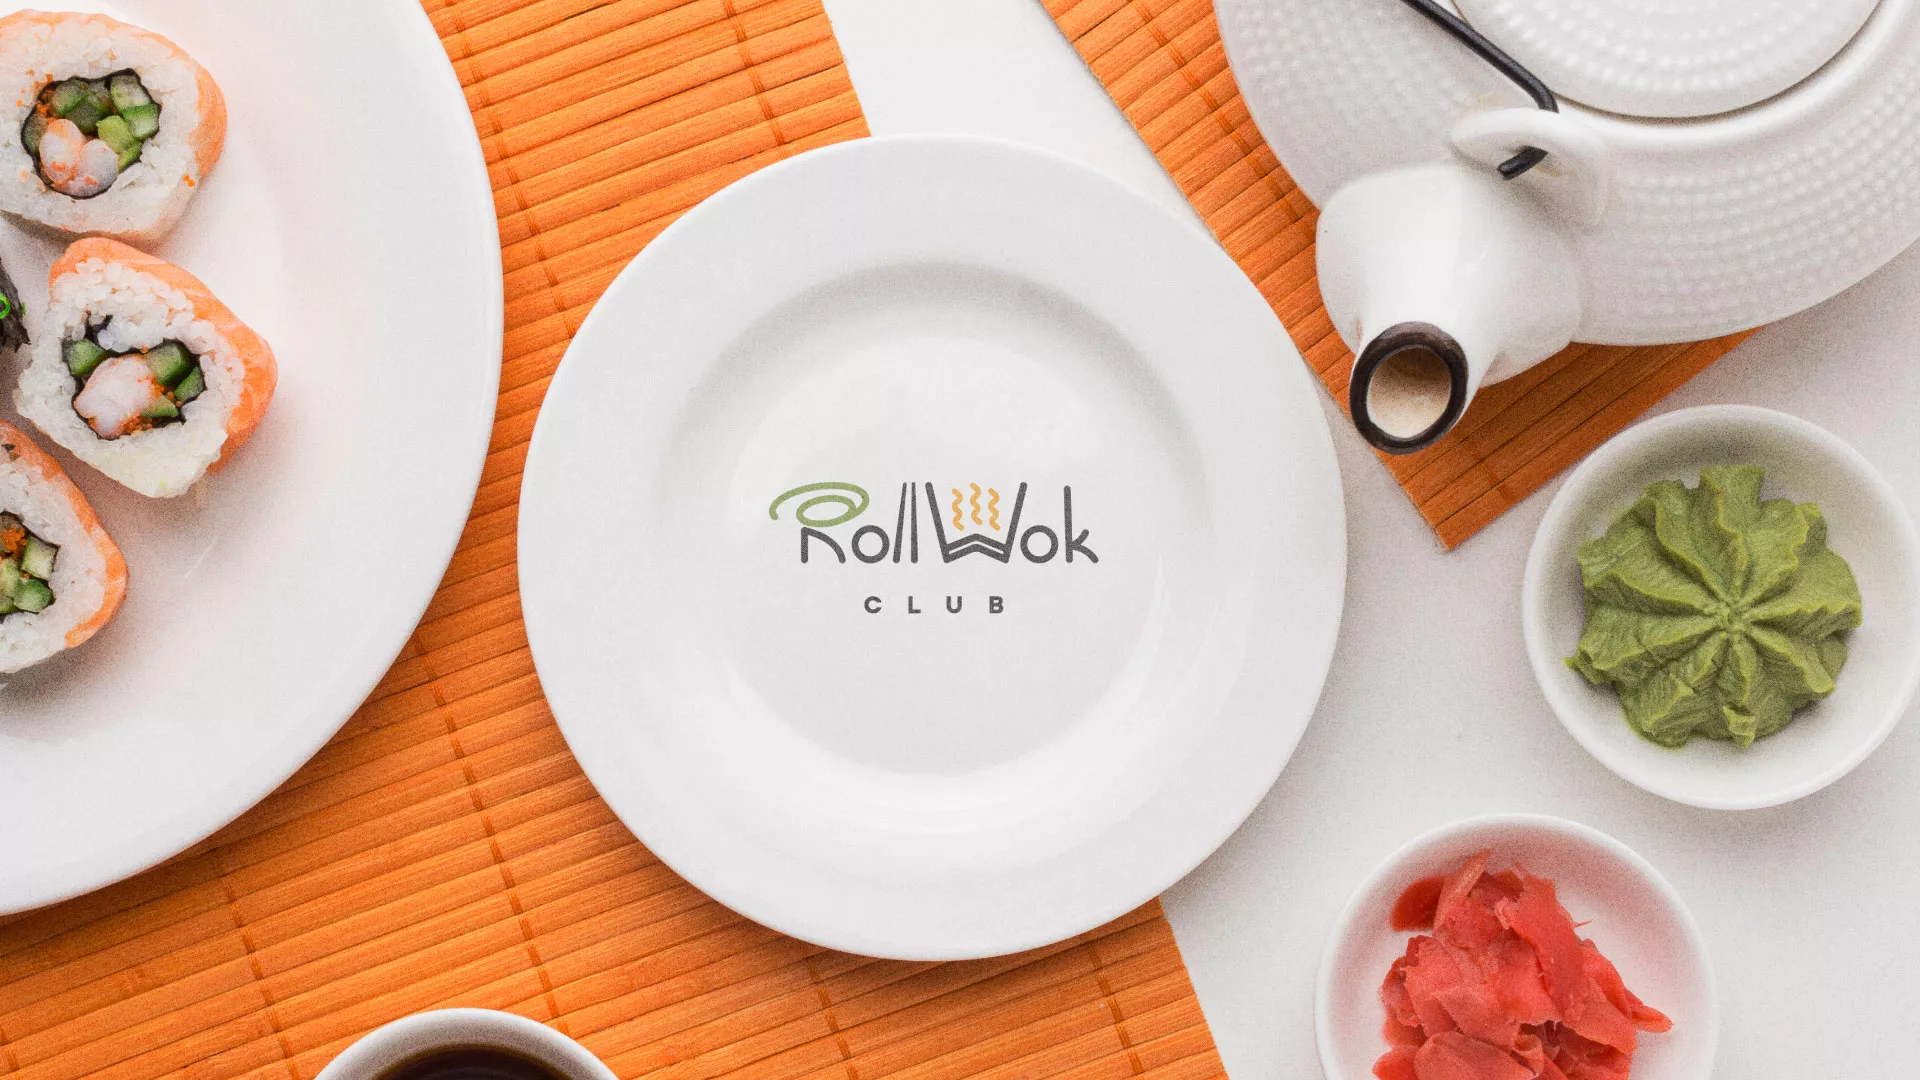 Разработка логотипа и фирменного стиля суши-бара «Roll Wok Club» в Ак-Довураке